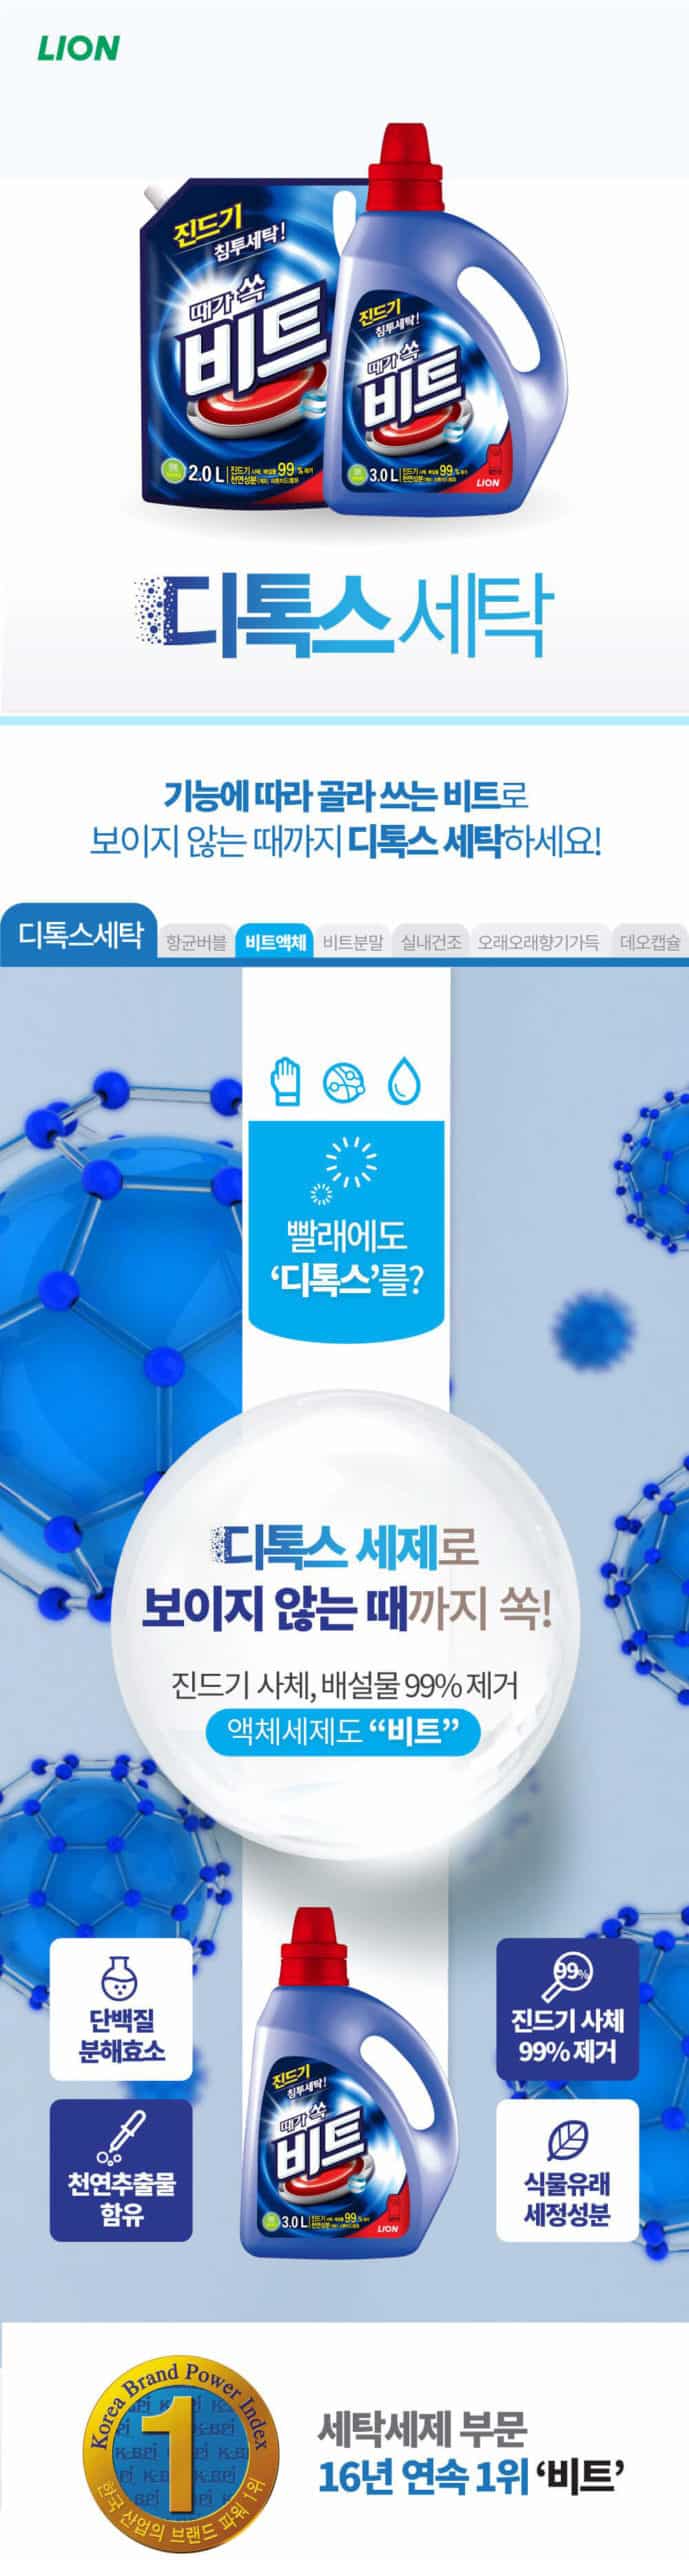 韓國食品-[LG Lion] BEAT 除蟎標準洗衣液補充裝 [滾筒式專用] 2L